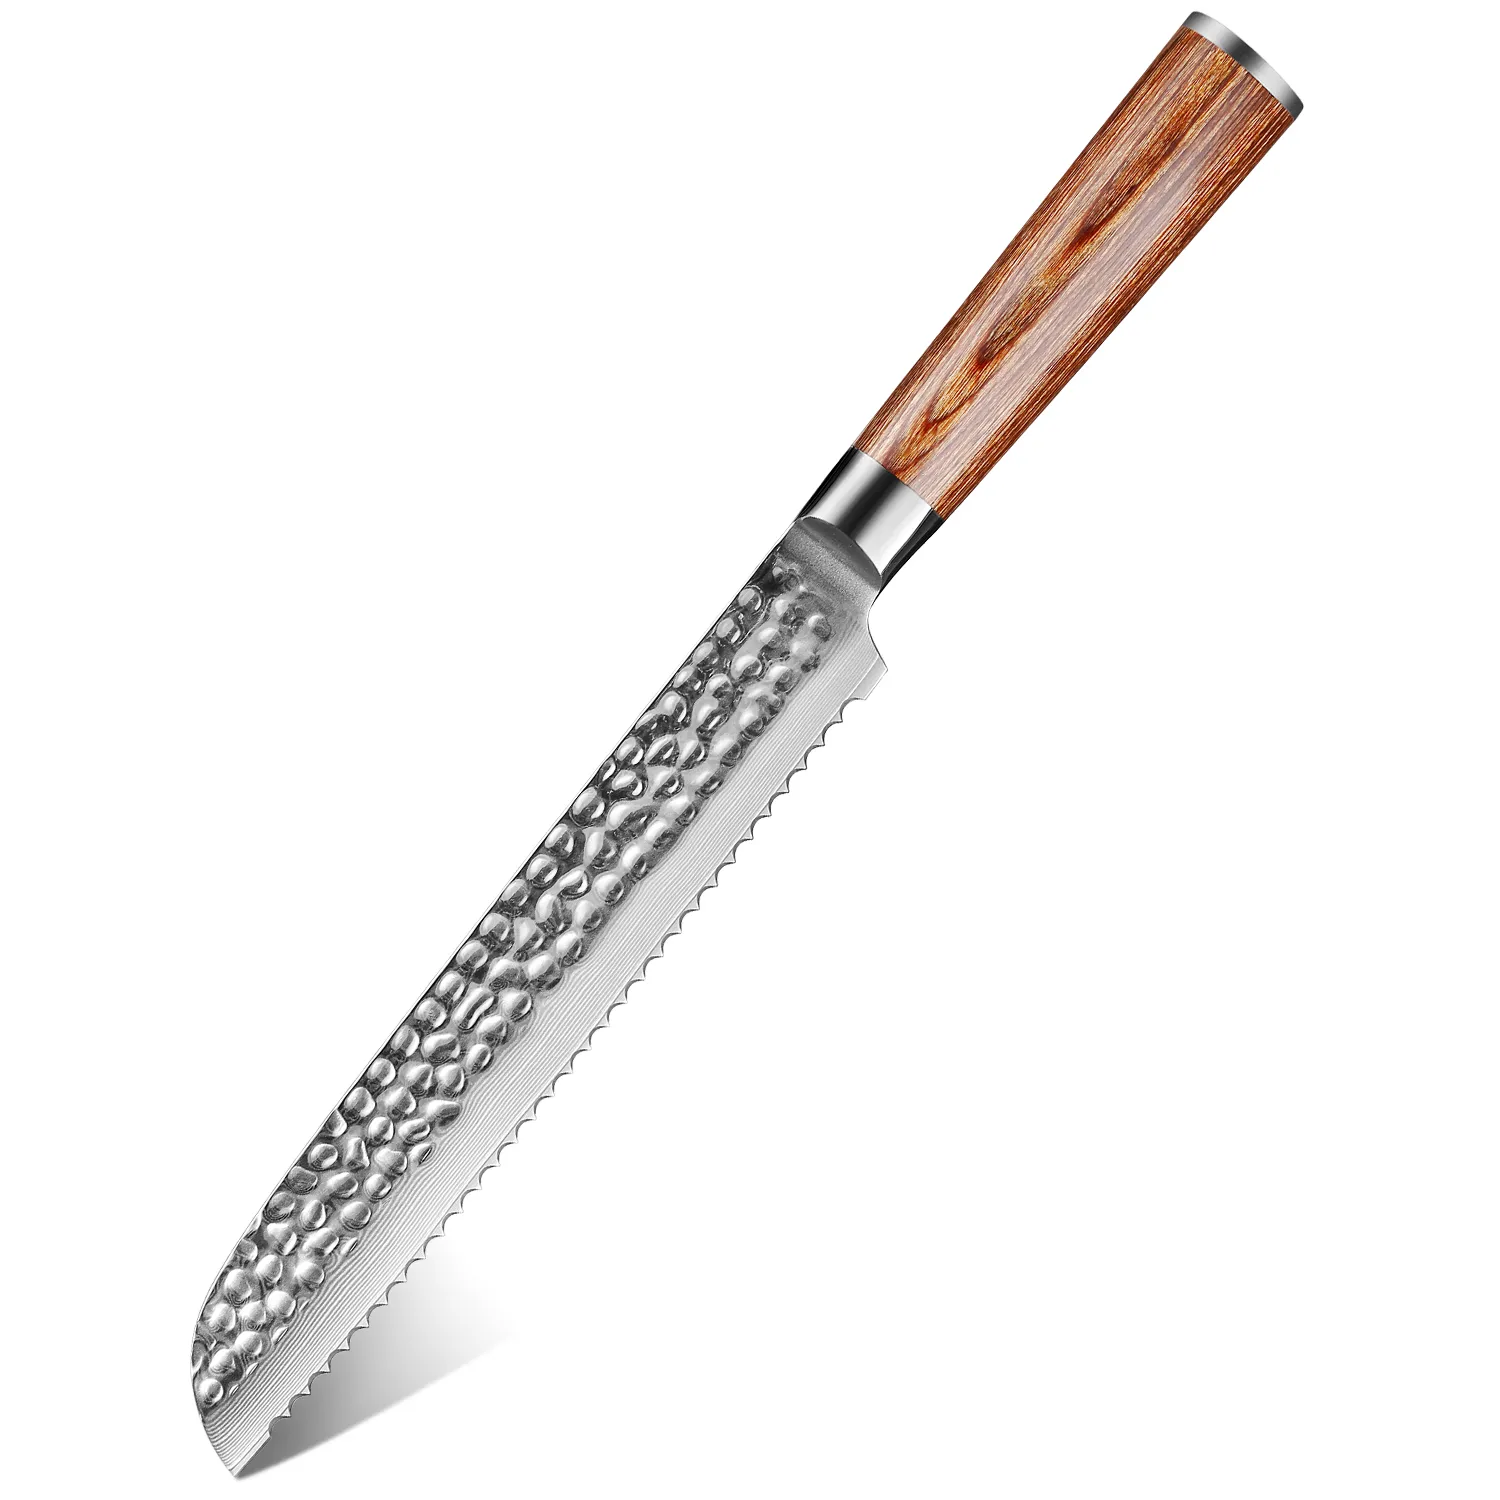 Xituo 8 '' дюймовый зубчатый хлеб нож дамаск сталь Pakkawood ручка кухонные ножи бритвы острые сыр торт нож кулинарные инструменты